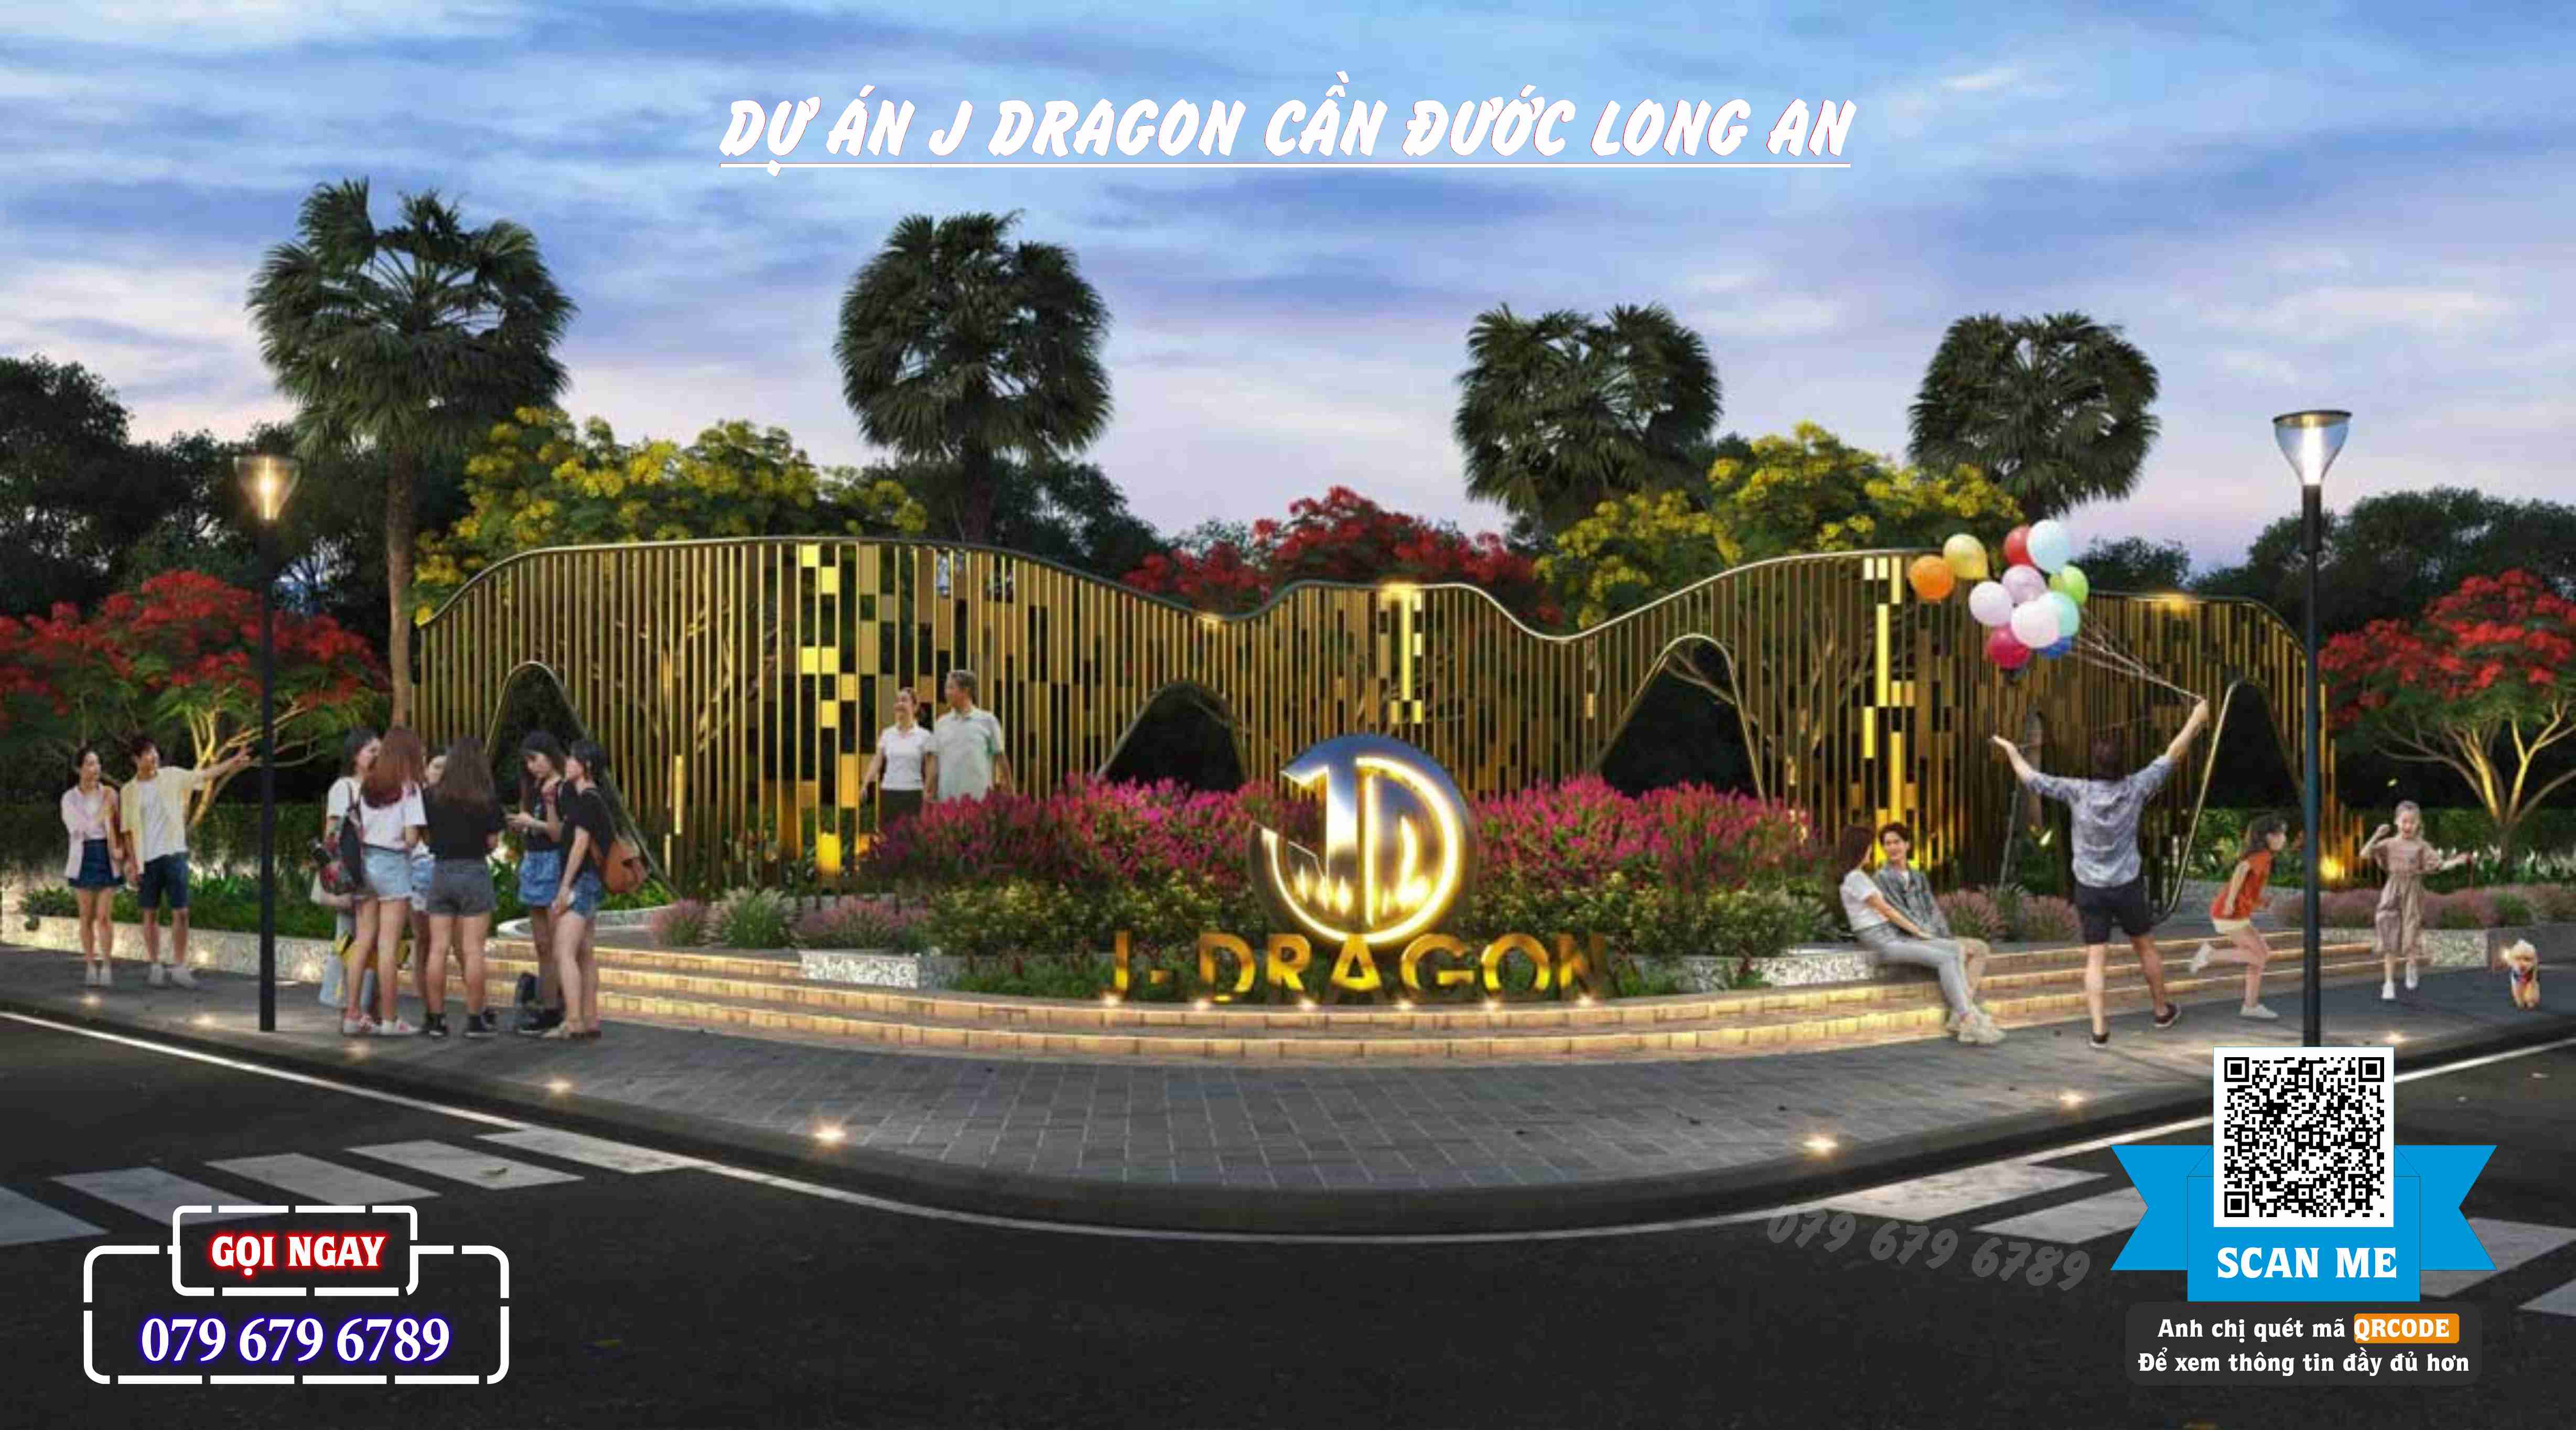 J Dragon Can Duoc Long An (15)